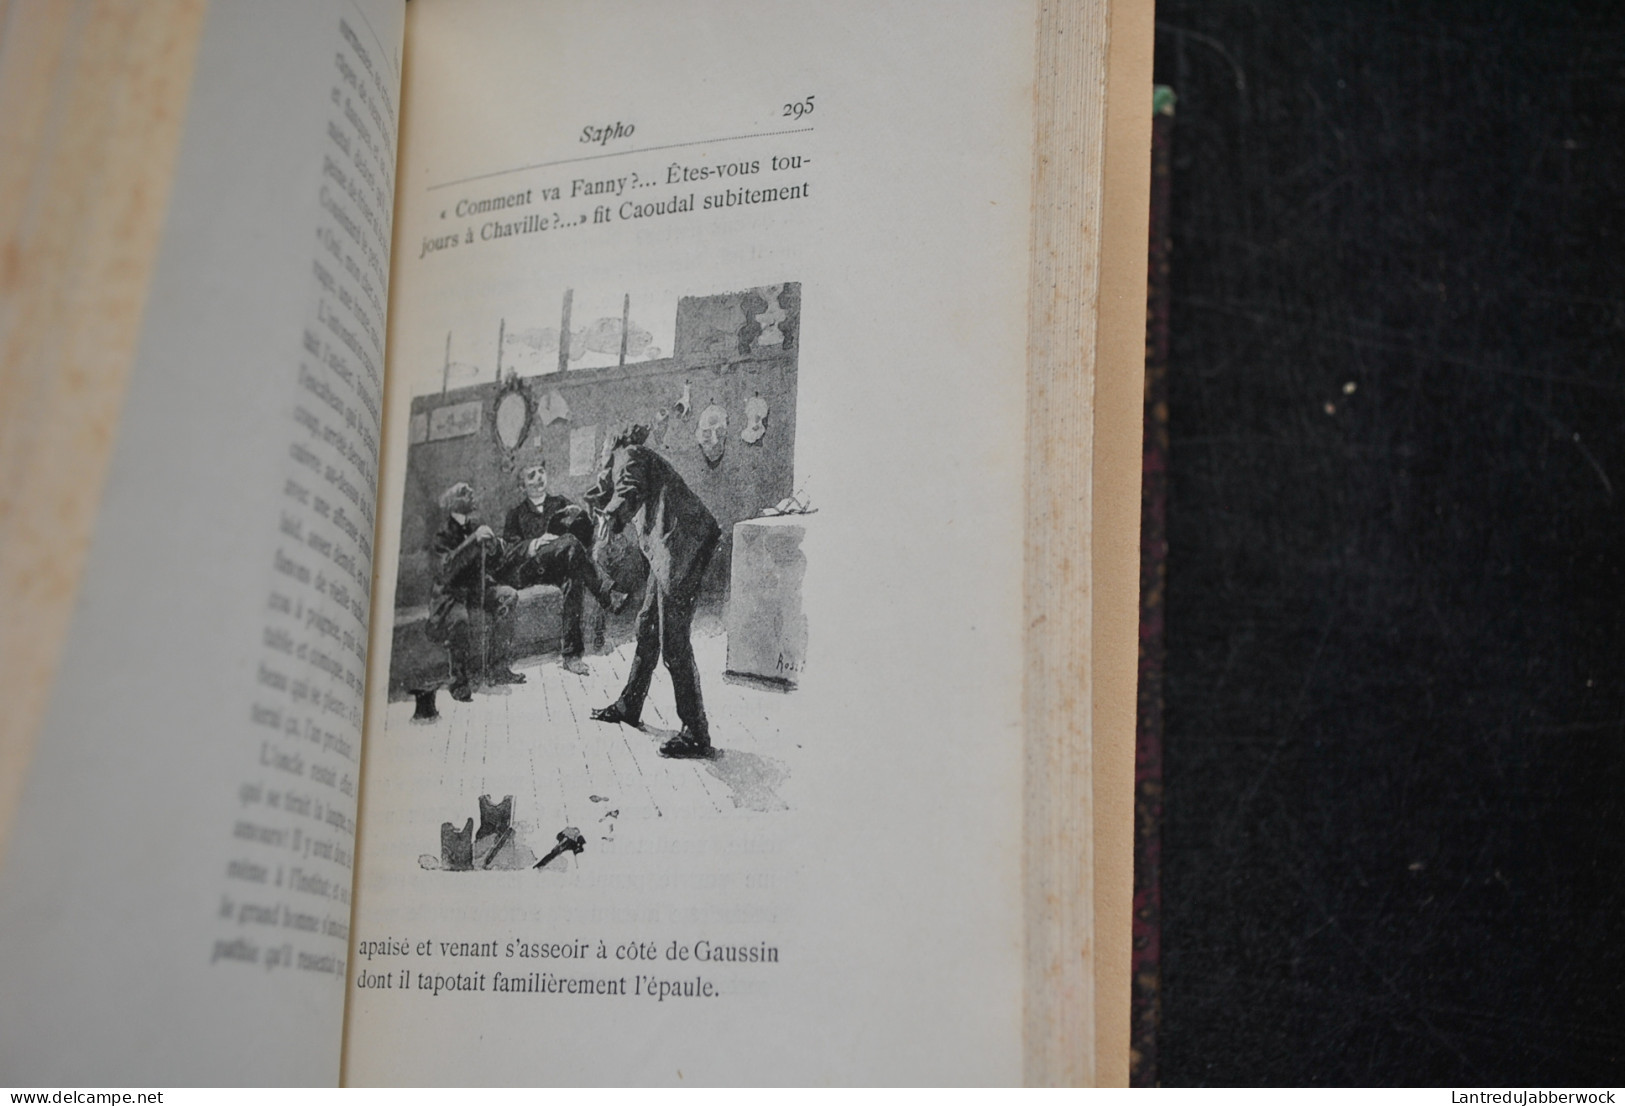 Alphonse DAUDET SAPHO Moeurs parisiennes Illustrations de Rossi Myrbach MARPON & Flammarion 1887 Erotique Reliure RONNER